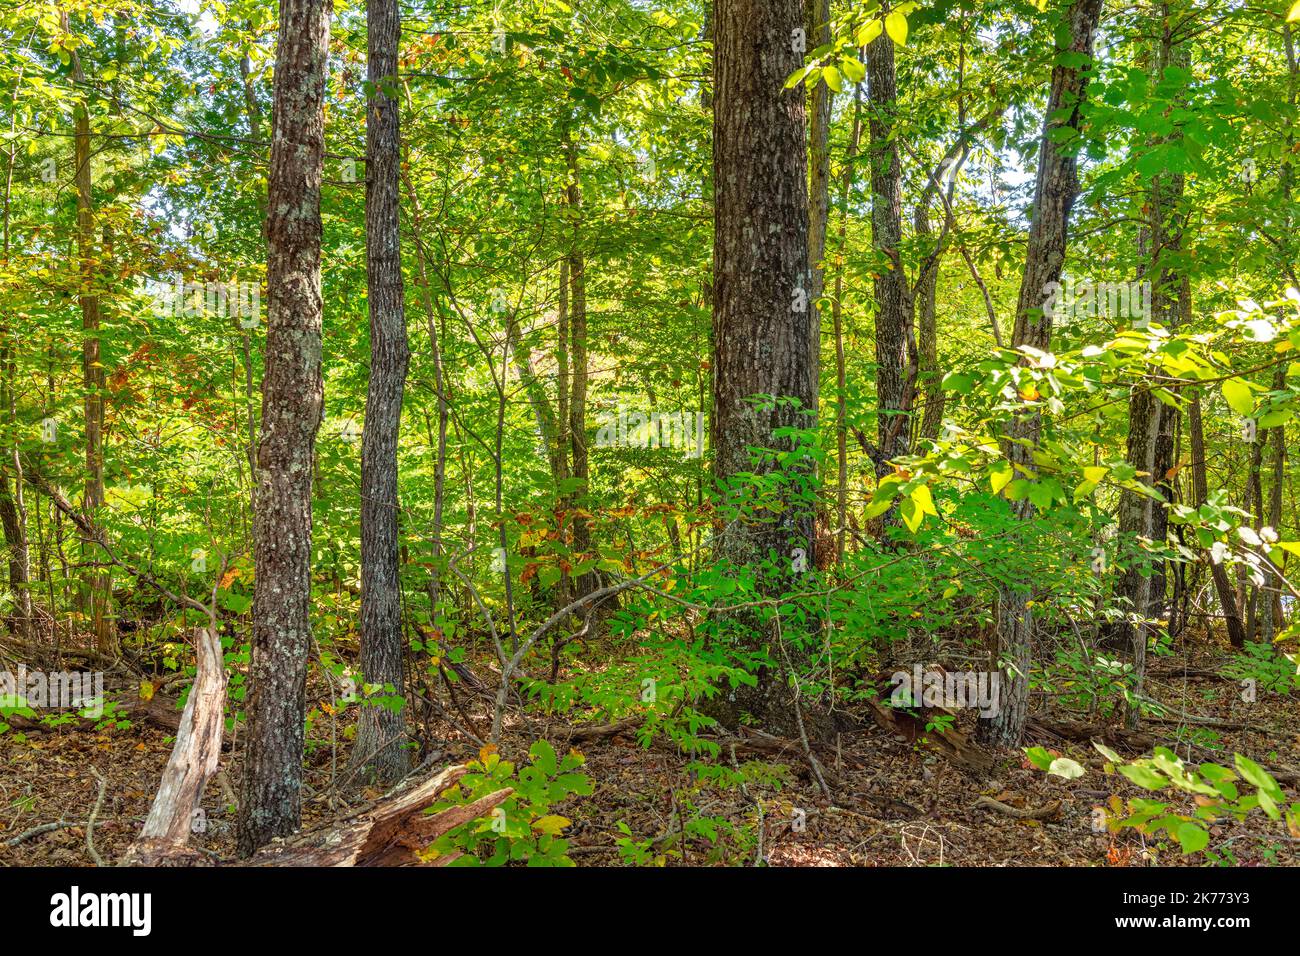 La vista del parque nacional Catoosa en Tennessee mirando el bosque muestra el follaje vibrante y saludable y el tranquilo y aislado paisaje durante una Foto de stock